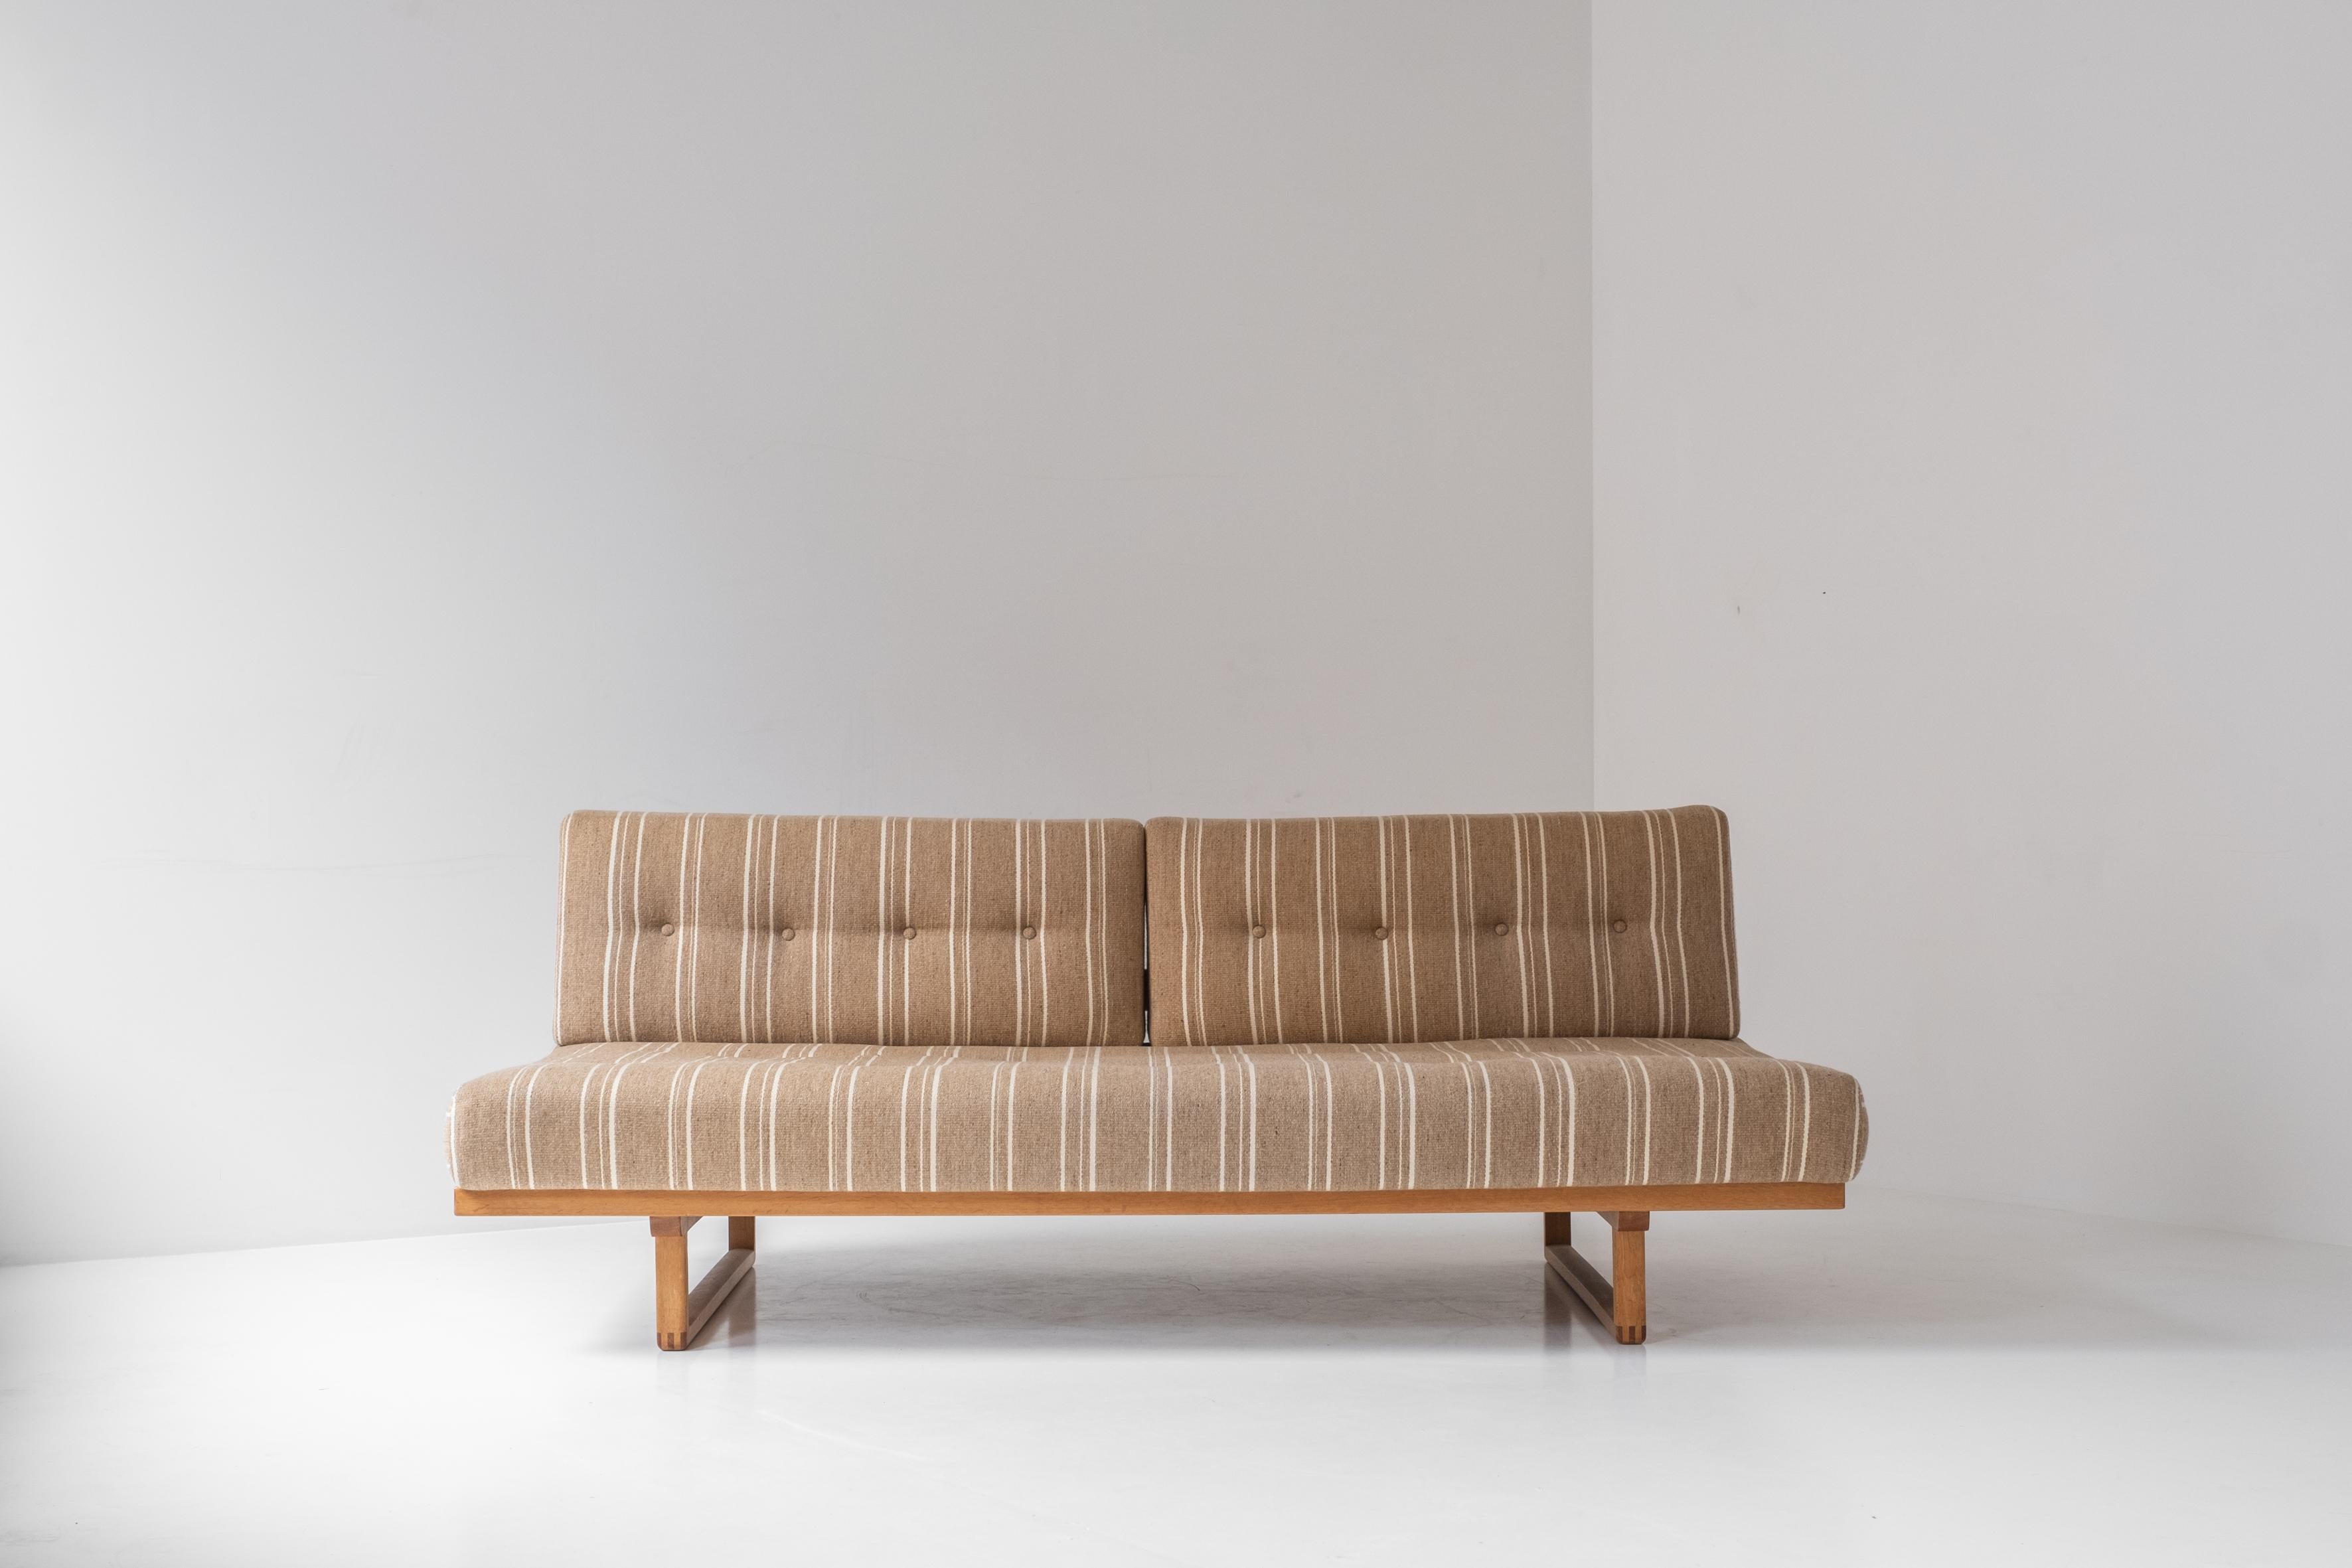 Rare canapé ou lit de jour 'Model No 4311' conçu par Børge Mogensen pour Fredericia Stolefabrik, Danemark années 1950. Ce canapé présente un cadre en chêne et reste la tapisserie d'origine. Il est présenté dans un très bon état d'origine avec